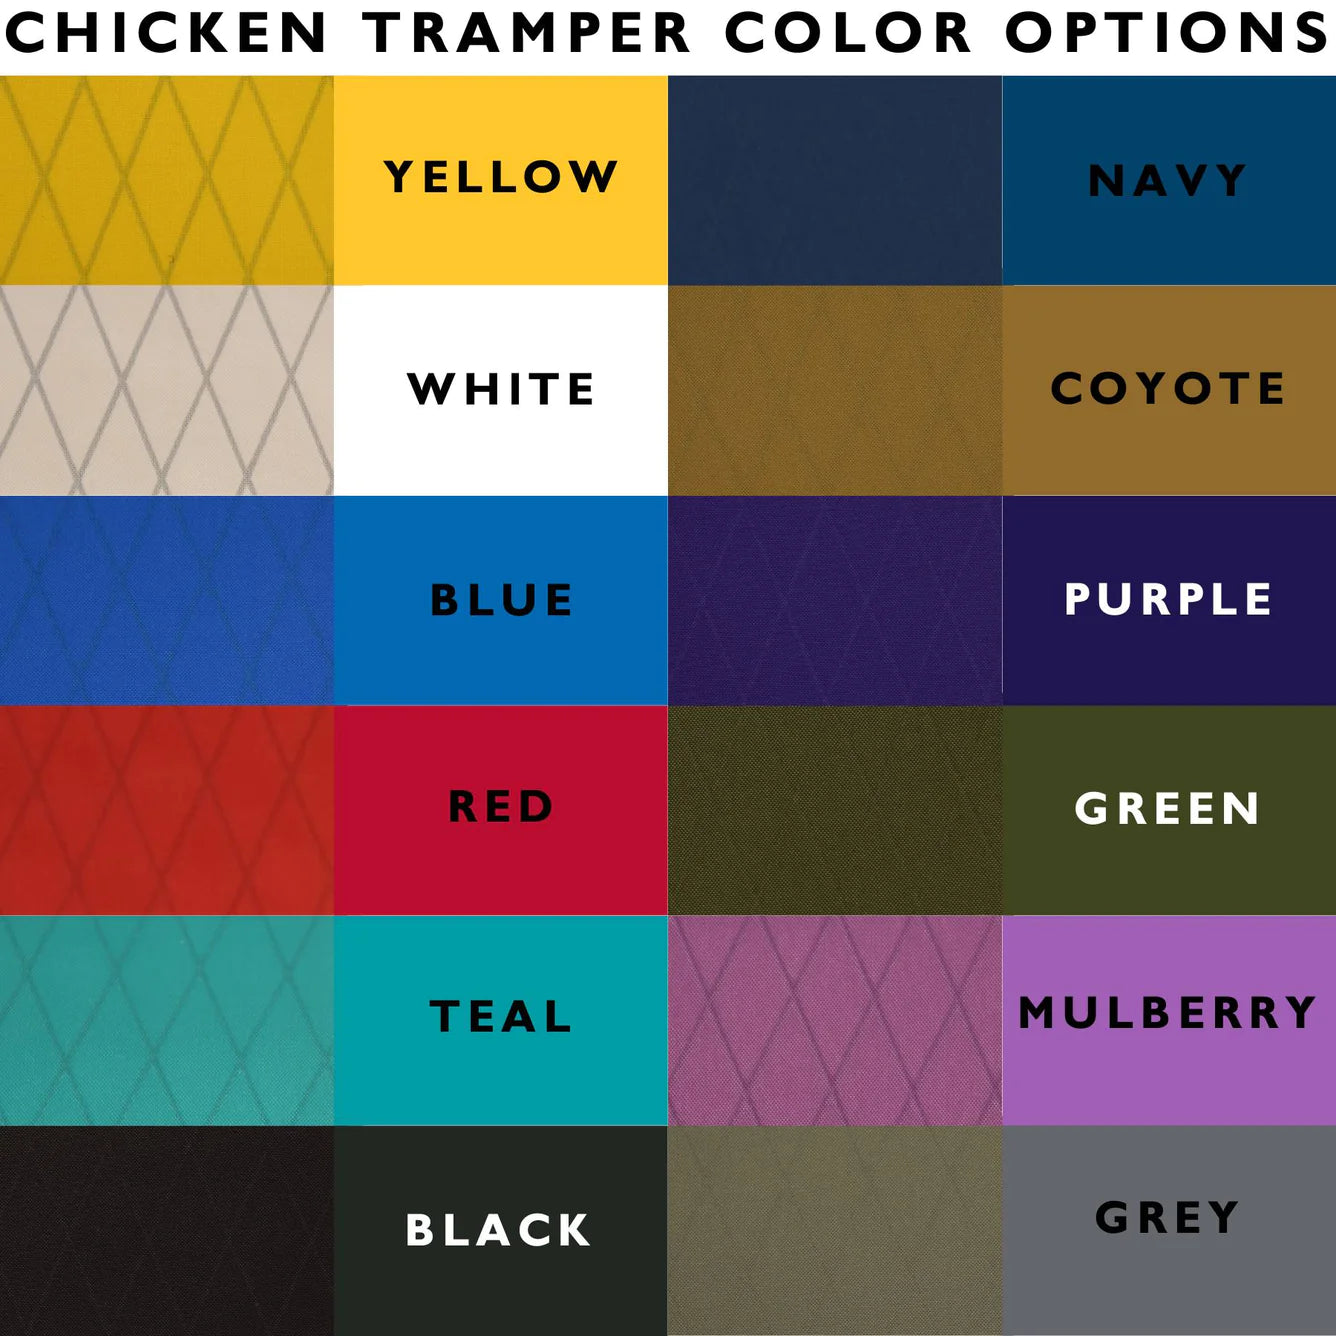 Chicken Tramper - Ultralight Wallet